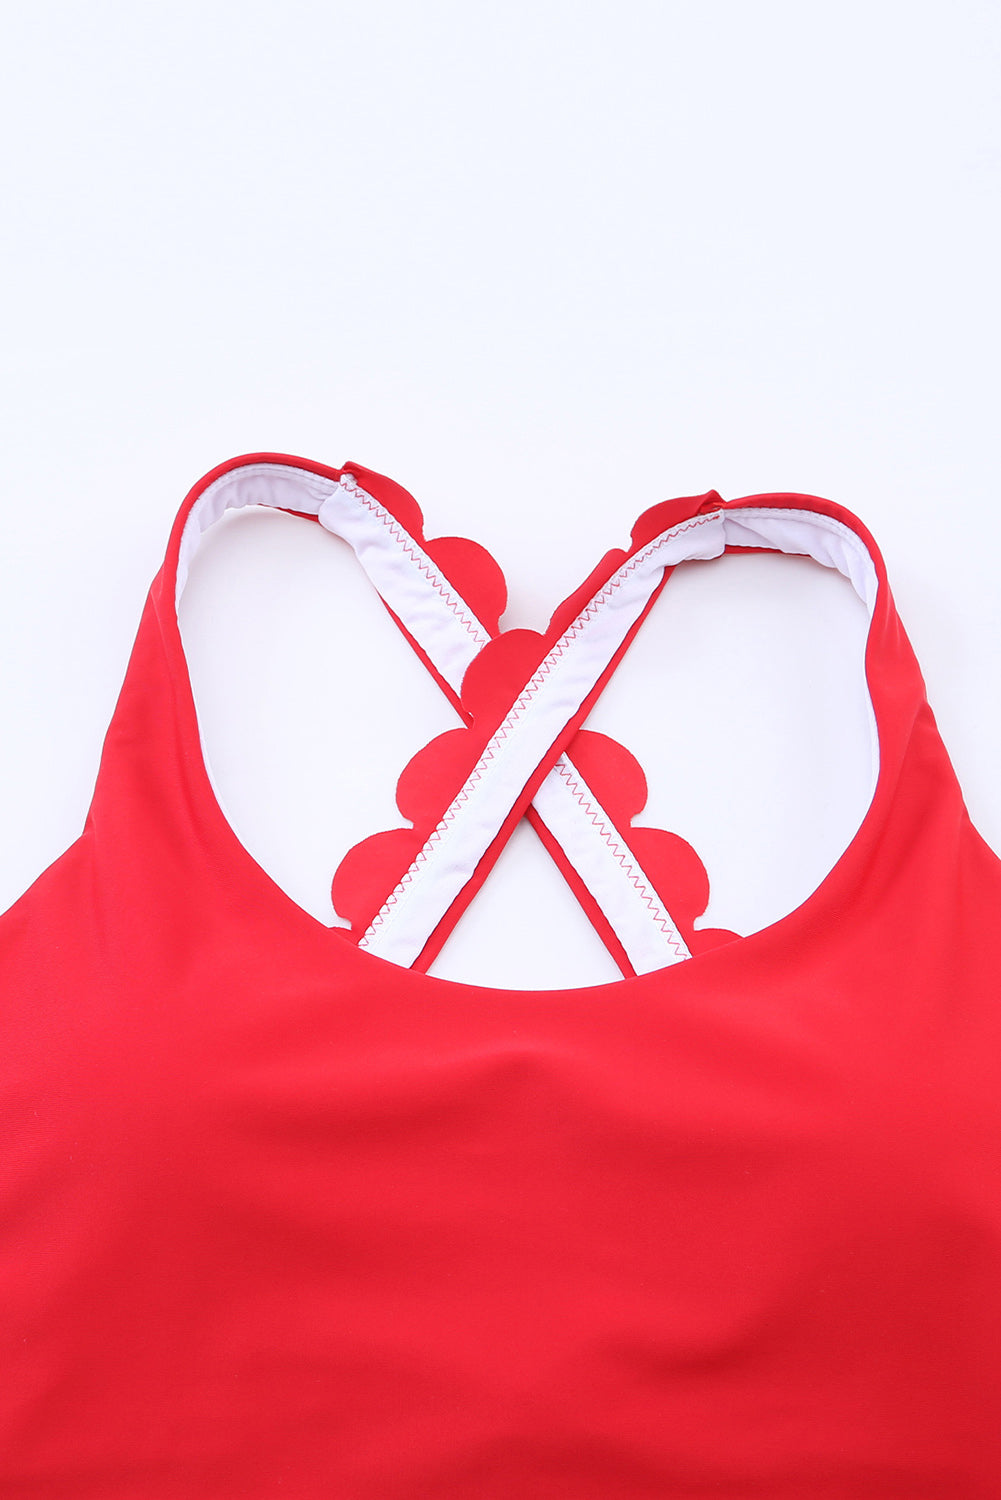 Vatrenocrveni skraćeni gornji dio bikinija s prekriženim naramenicama